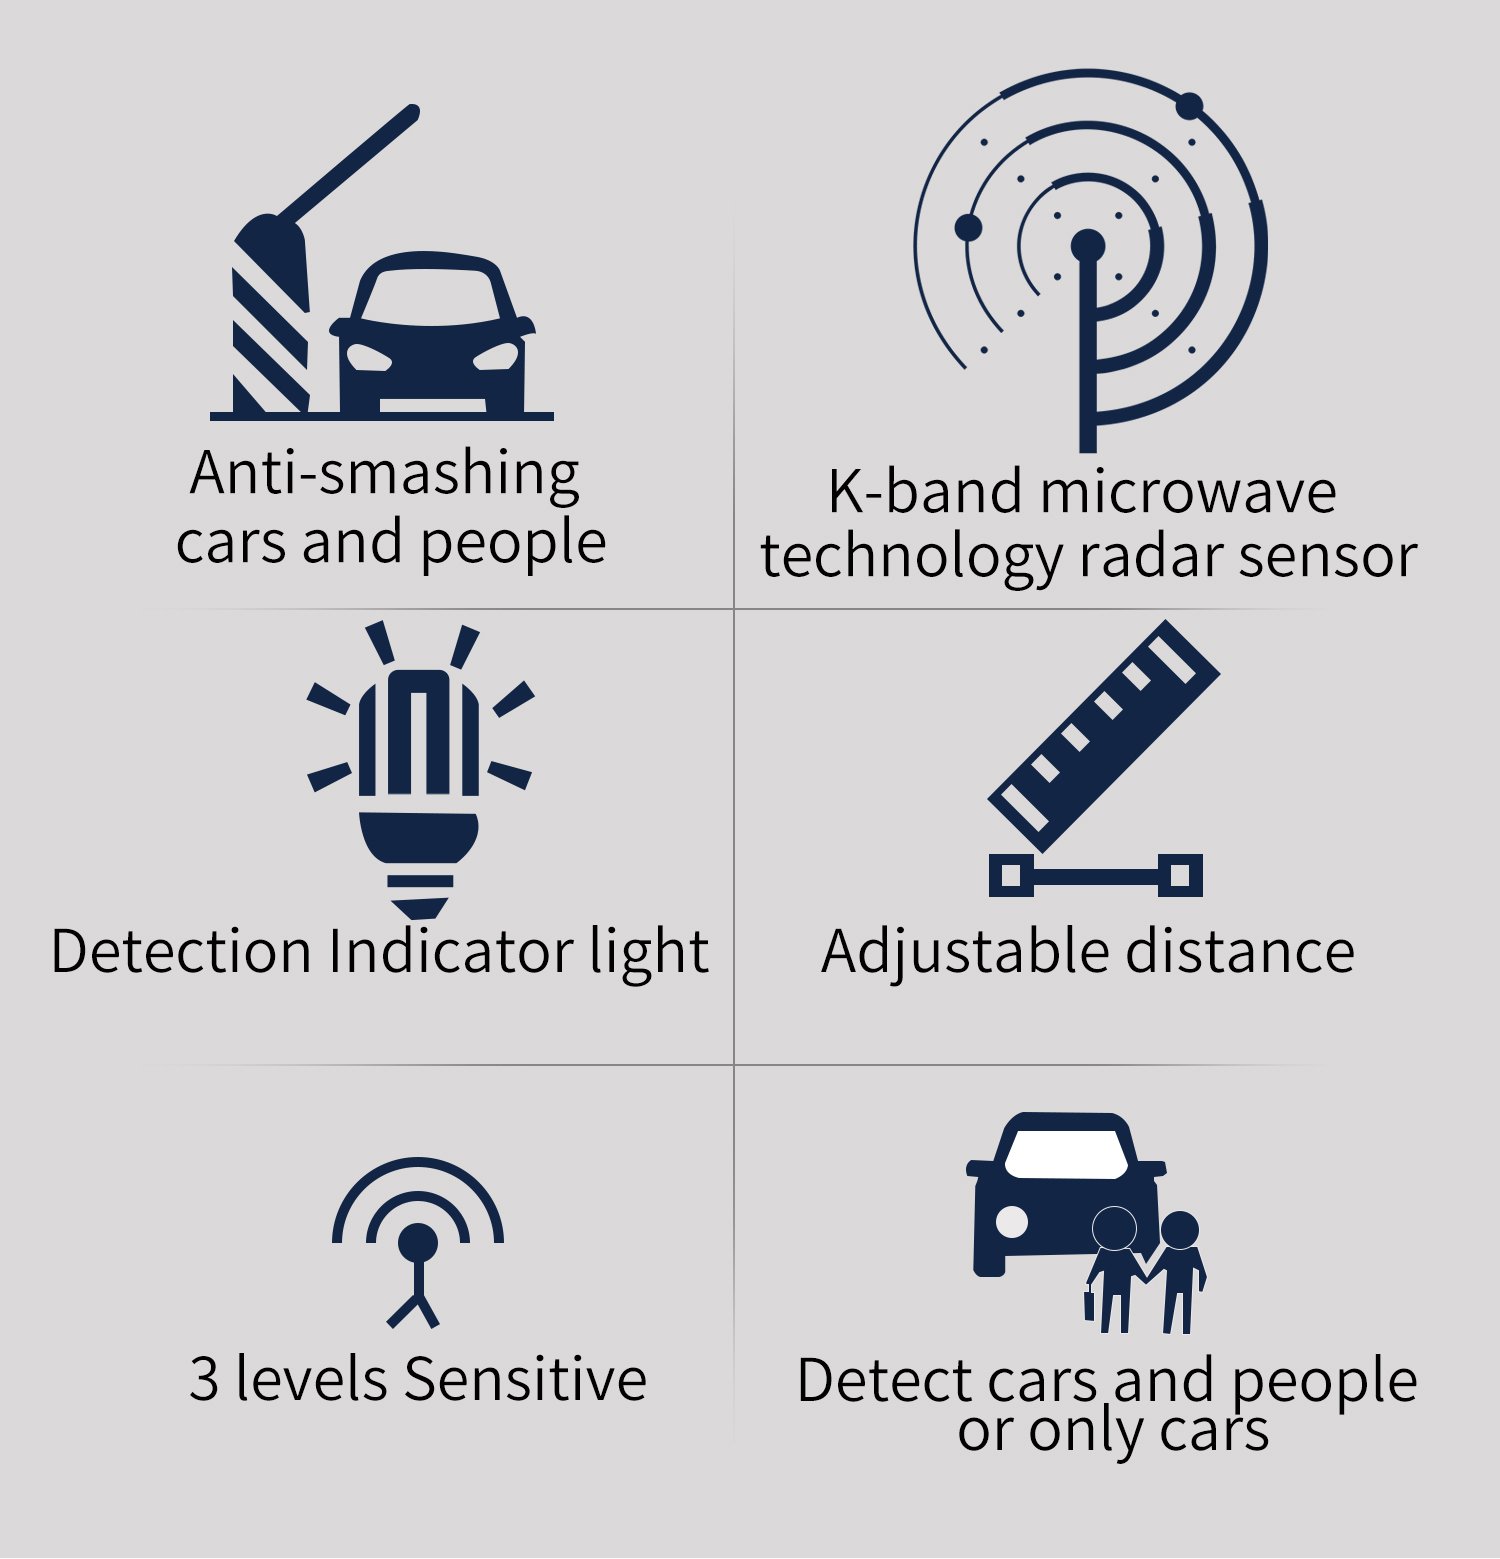 السيارات المضادة للانتهاك والأشخاص ، مستشعر رادار تكنولوجيا الميكروويف K-band ، ضوء مؤشر الكشف ، المسافة القابلة للتعديل ، 3 مستويات حساسة ، اكتشاف السيارات والأشخاص أو السيارات فقط